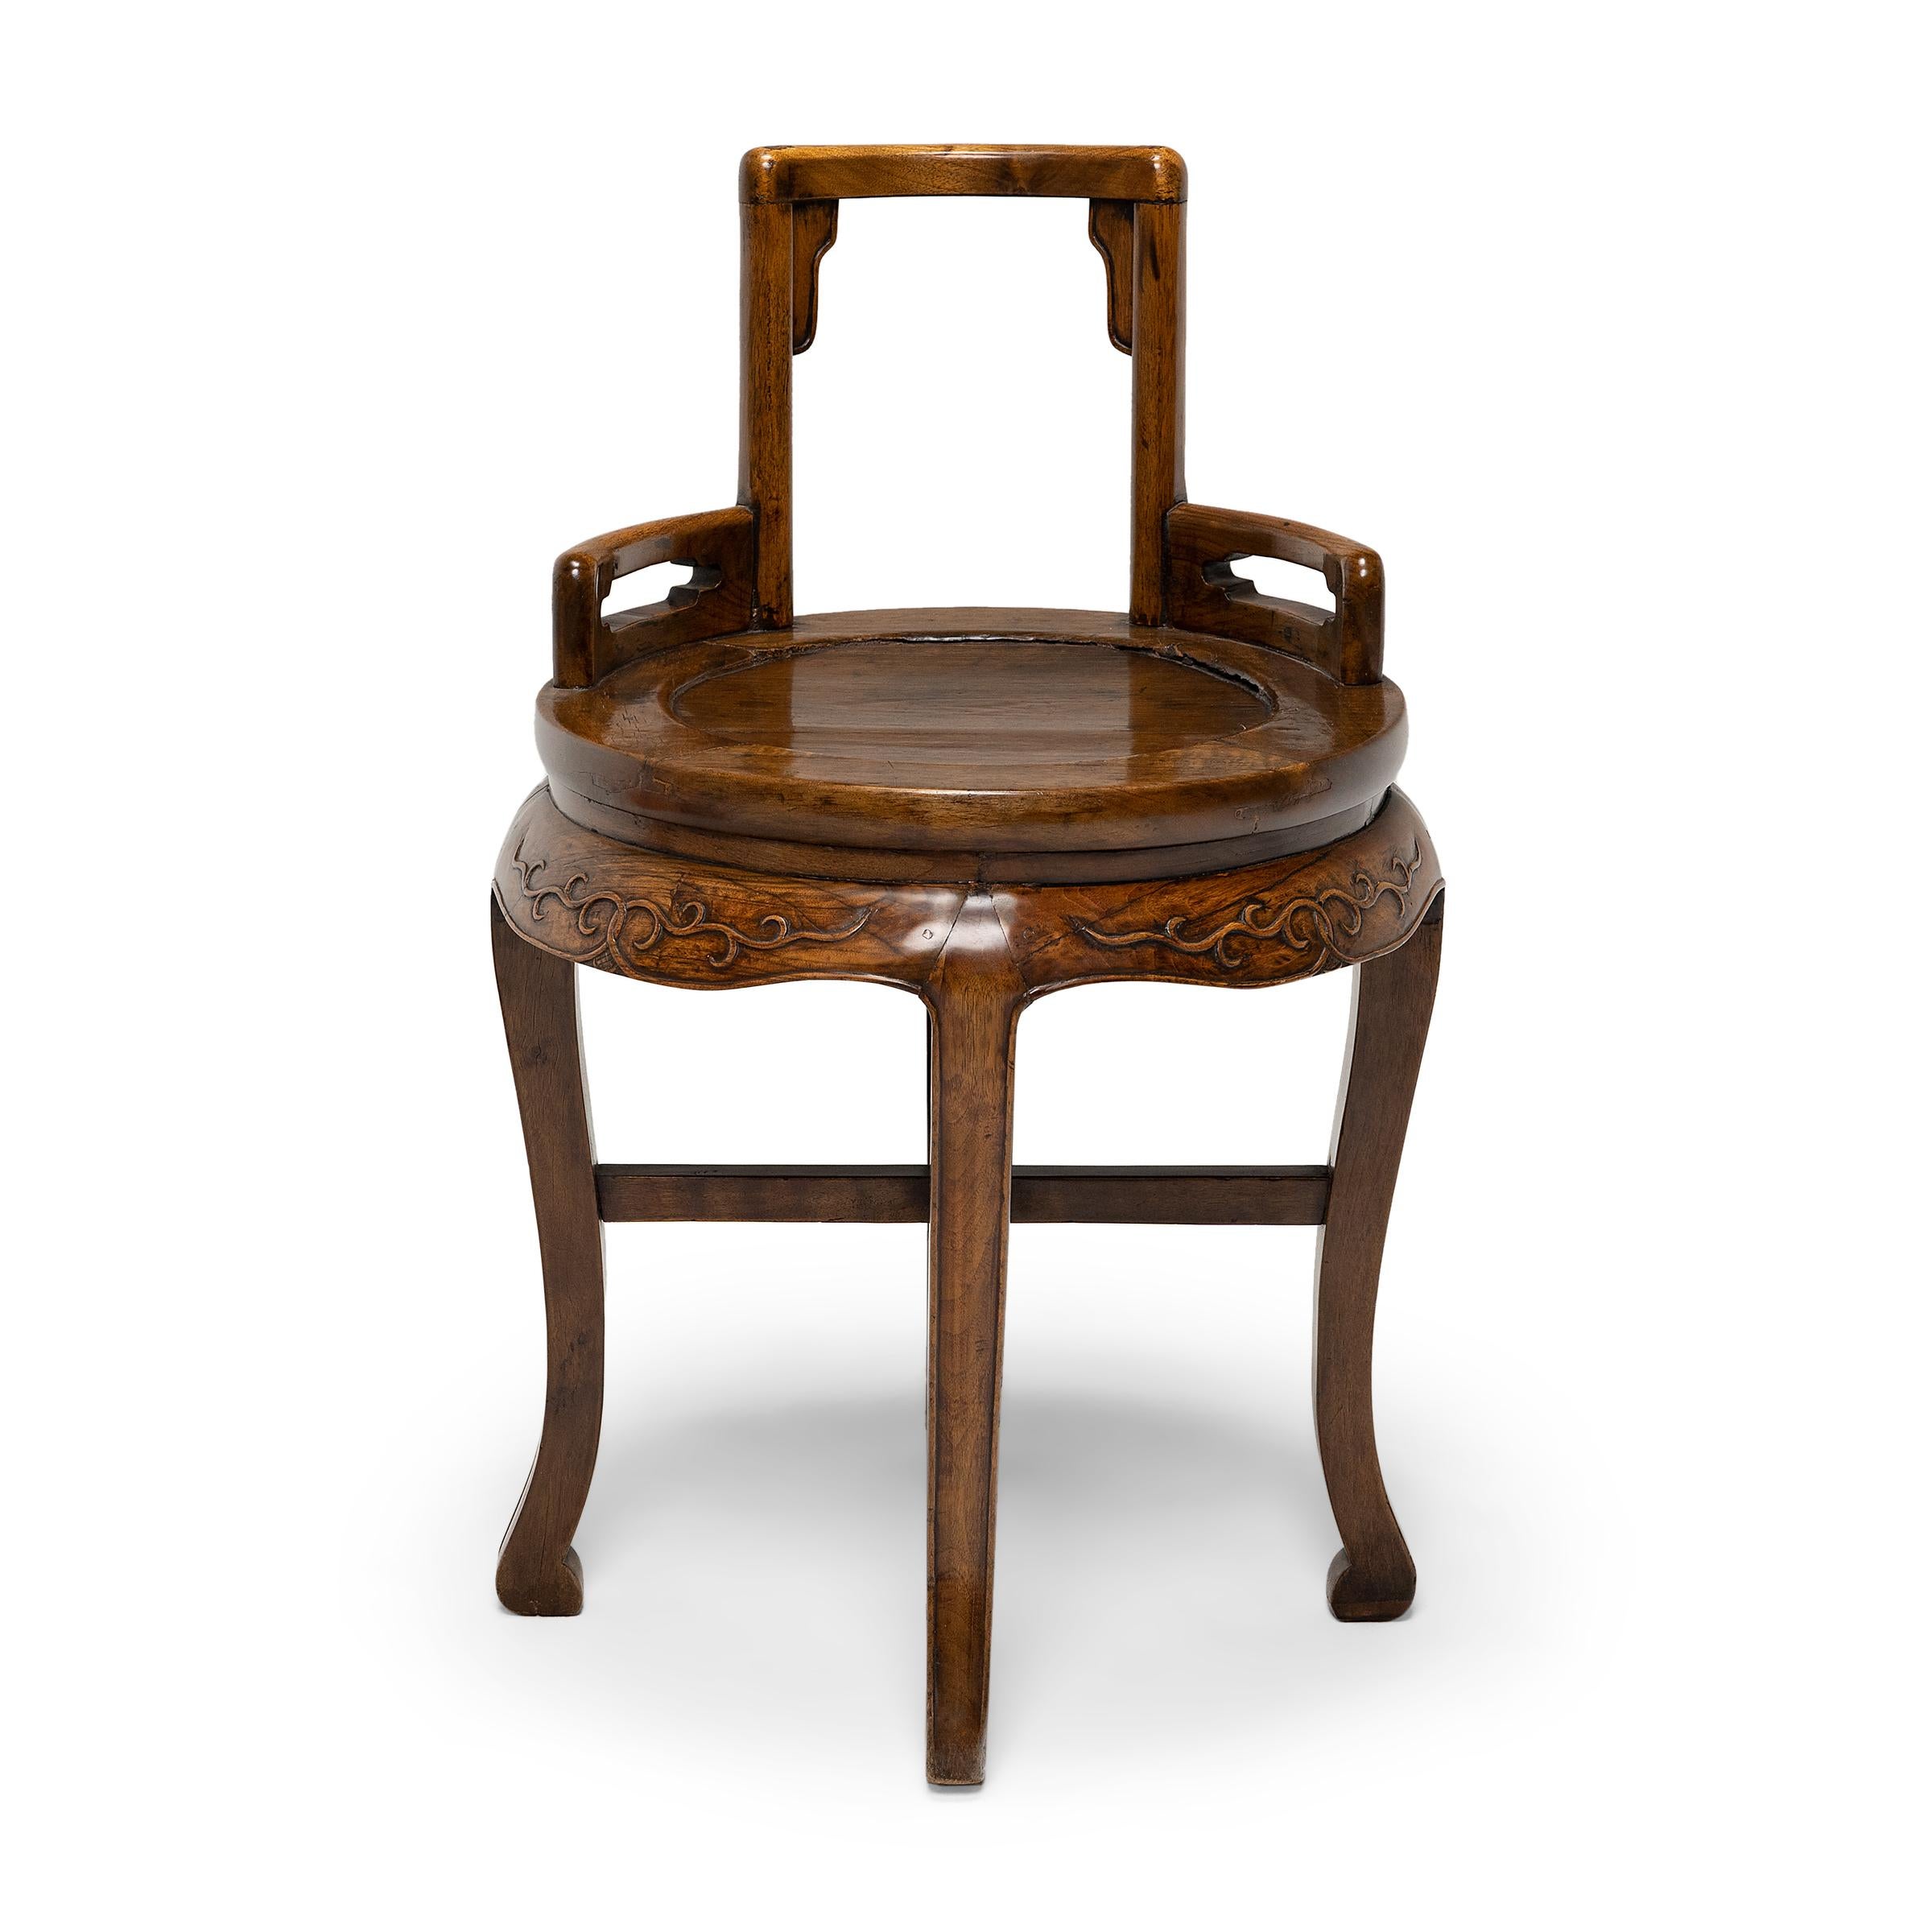 Datée de la fin du XIXe siècle, cette petite chaise pour dames combine le dossier bas et carré des chaises à rosace traditionnelles avec le cadre rond et les pieds en cabriole des tables d'exposition cintrées. La chaise présente un dossier ouvert